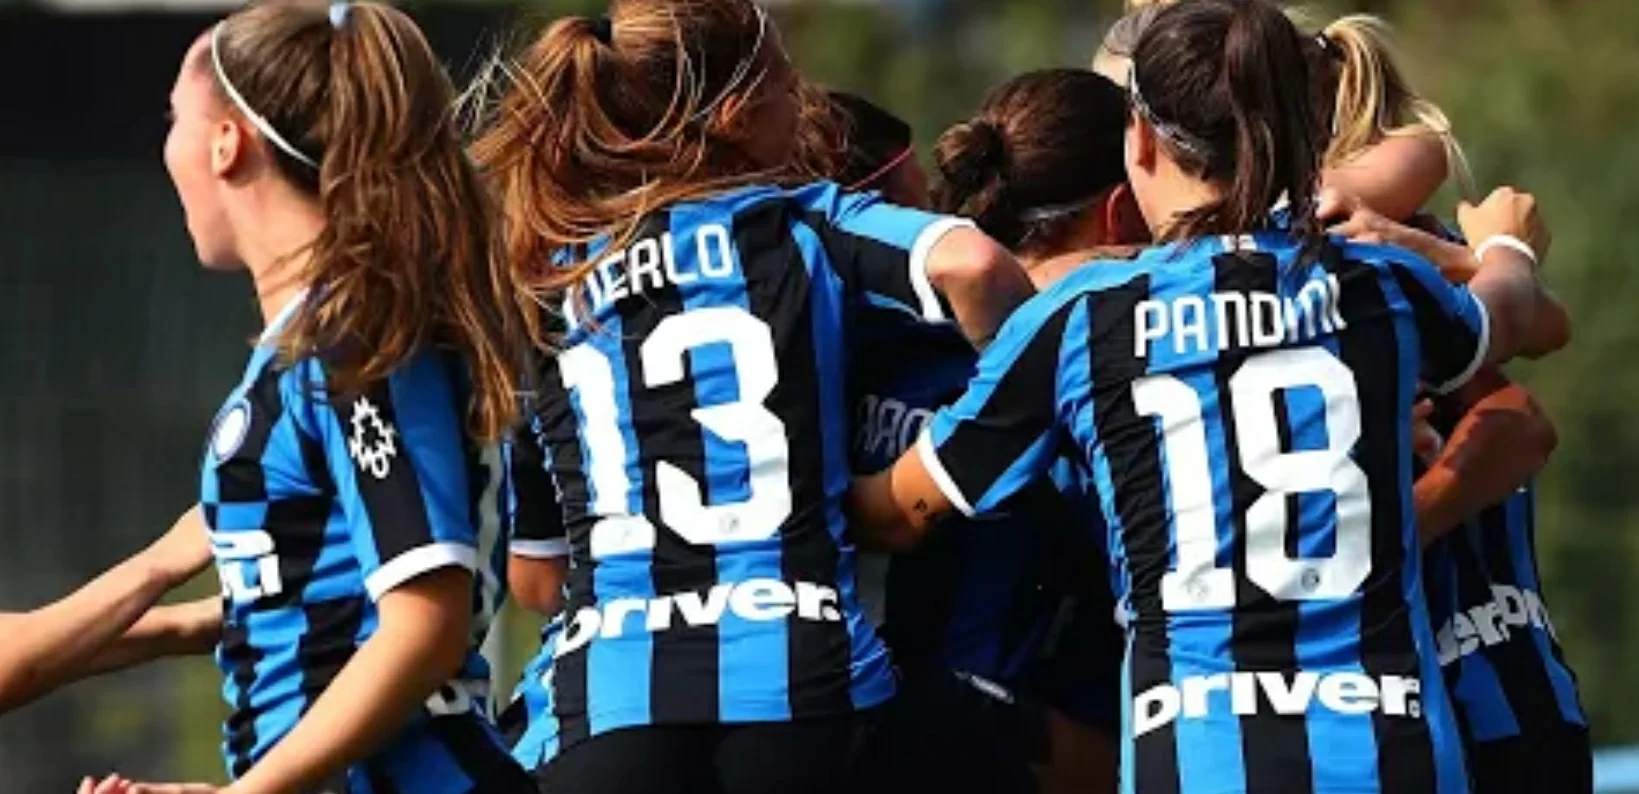 Inter Femminile, Pandini: “È un onore giocare il derby, posso svolgere diversi ruoli in campo…”